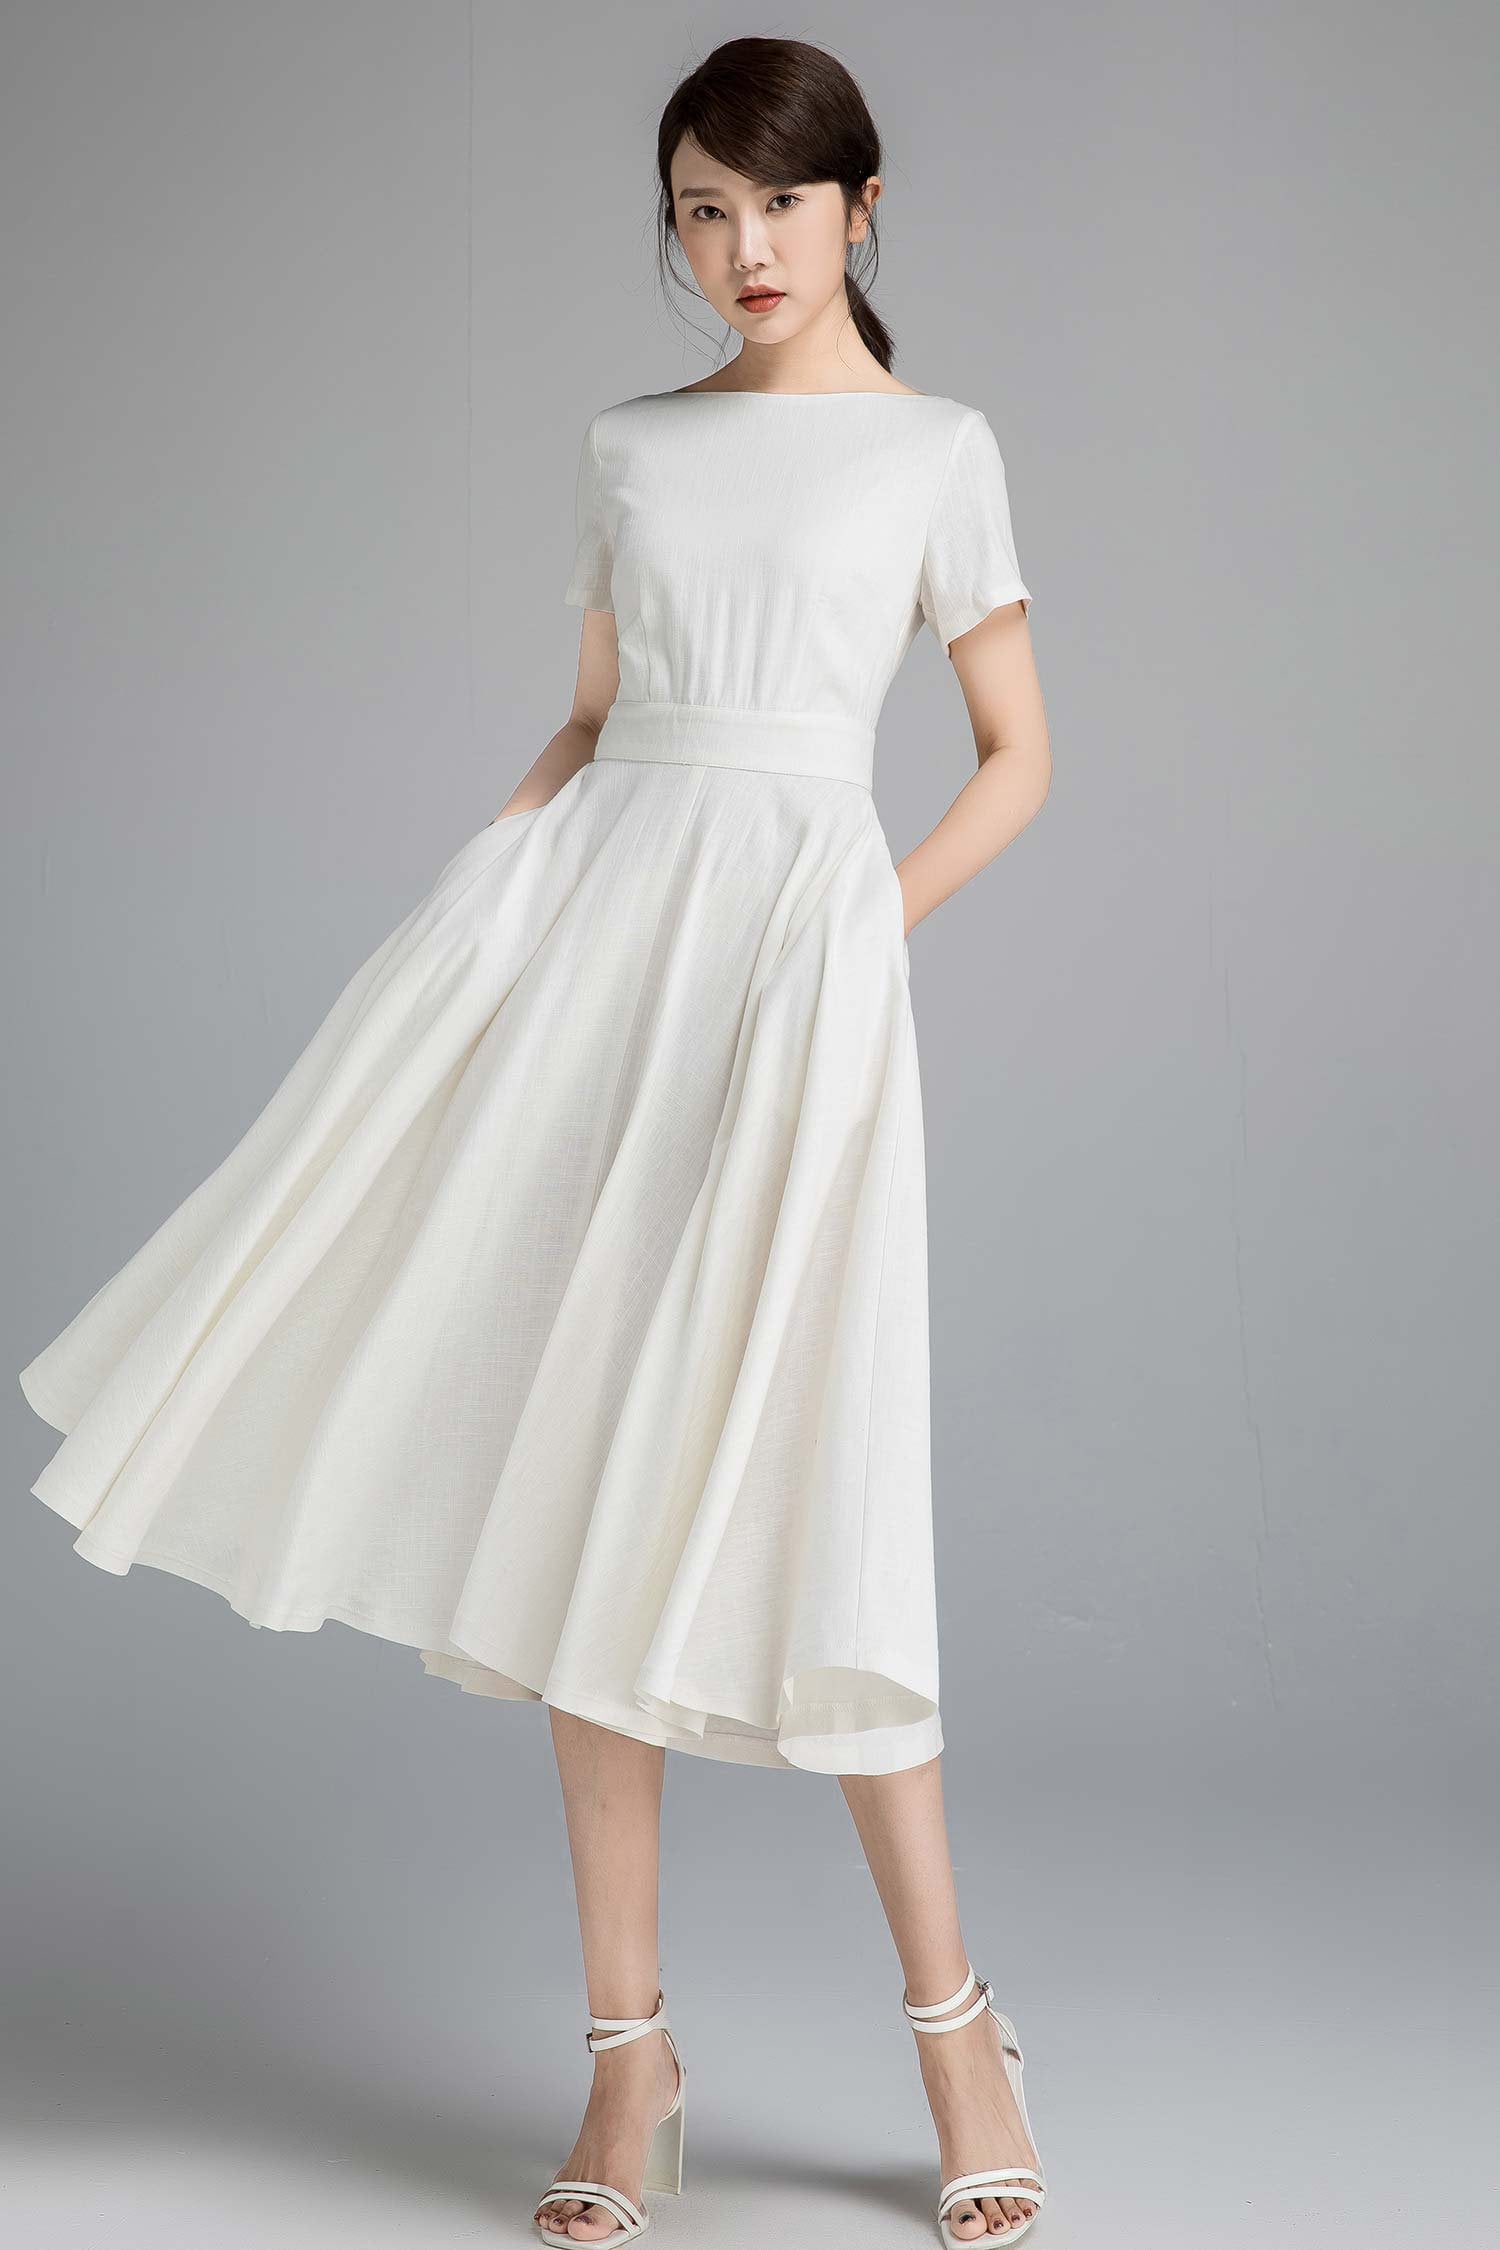 Weißes Leinenkleid, Weißes Kleid Frauen, Kurzarm Frauenkleid, Sommerkleid, Kleid, U-Boot-Ausschnitt, Partykleid 2338 # von xiaolizi